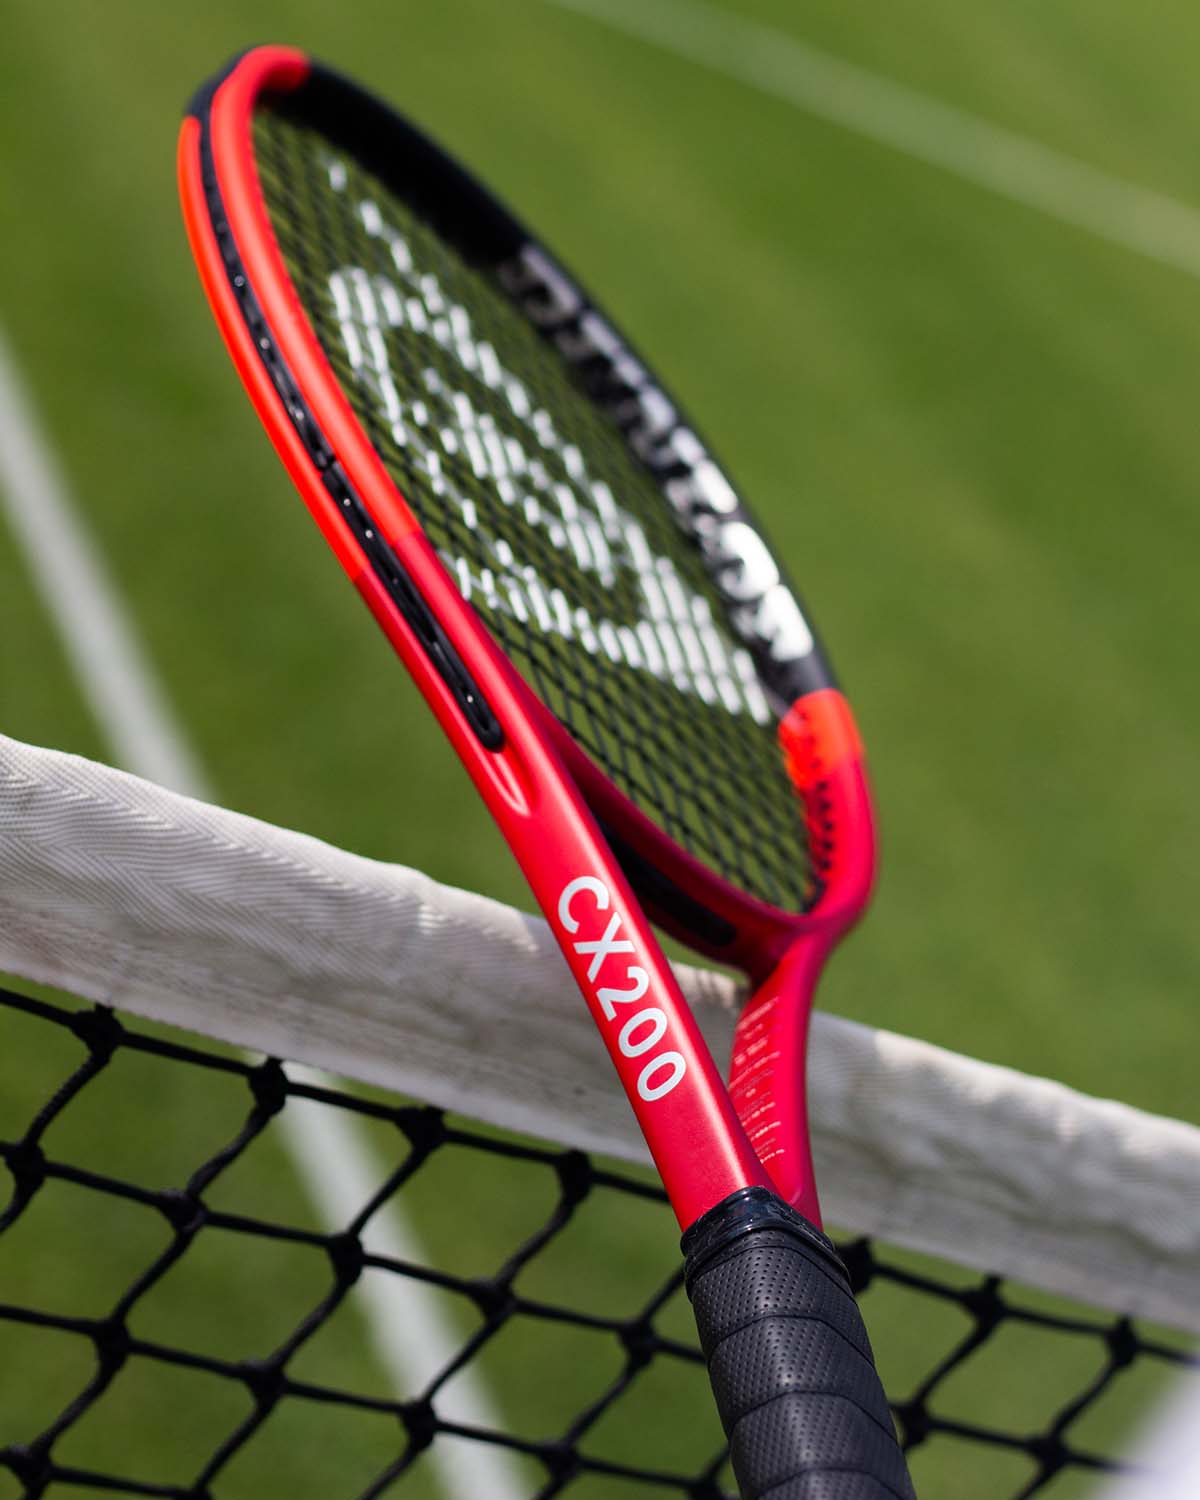 Dunlop CX200 Racket Series